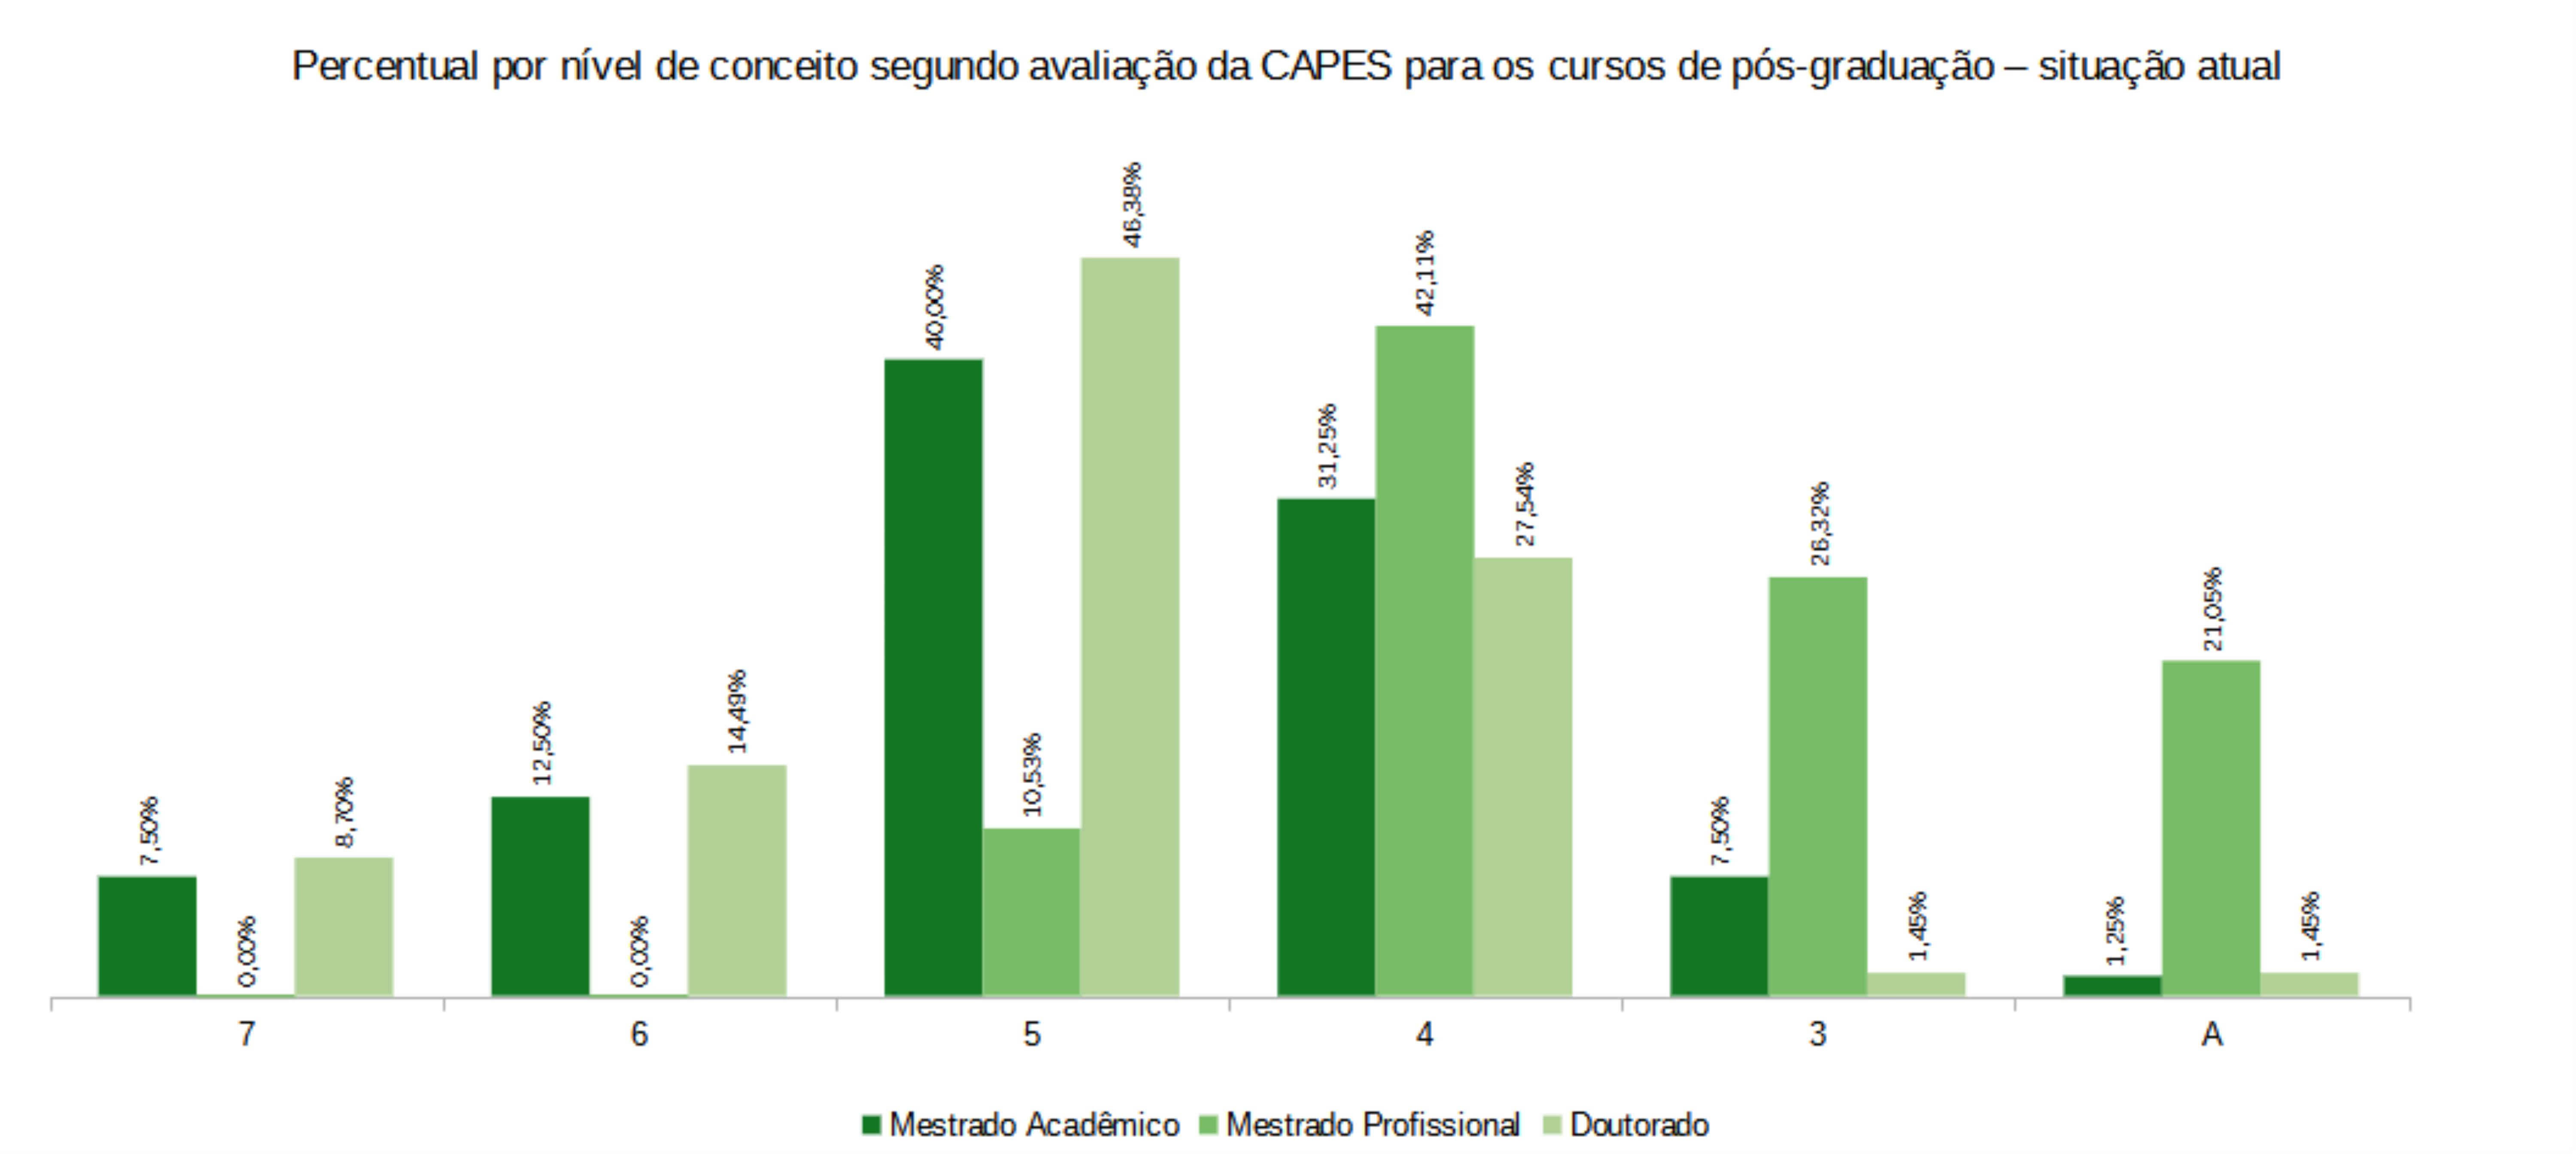 Percentual por nível de conceito segundo avaliação da CAPES para os cursos de pós-graduação – situação atual